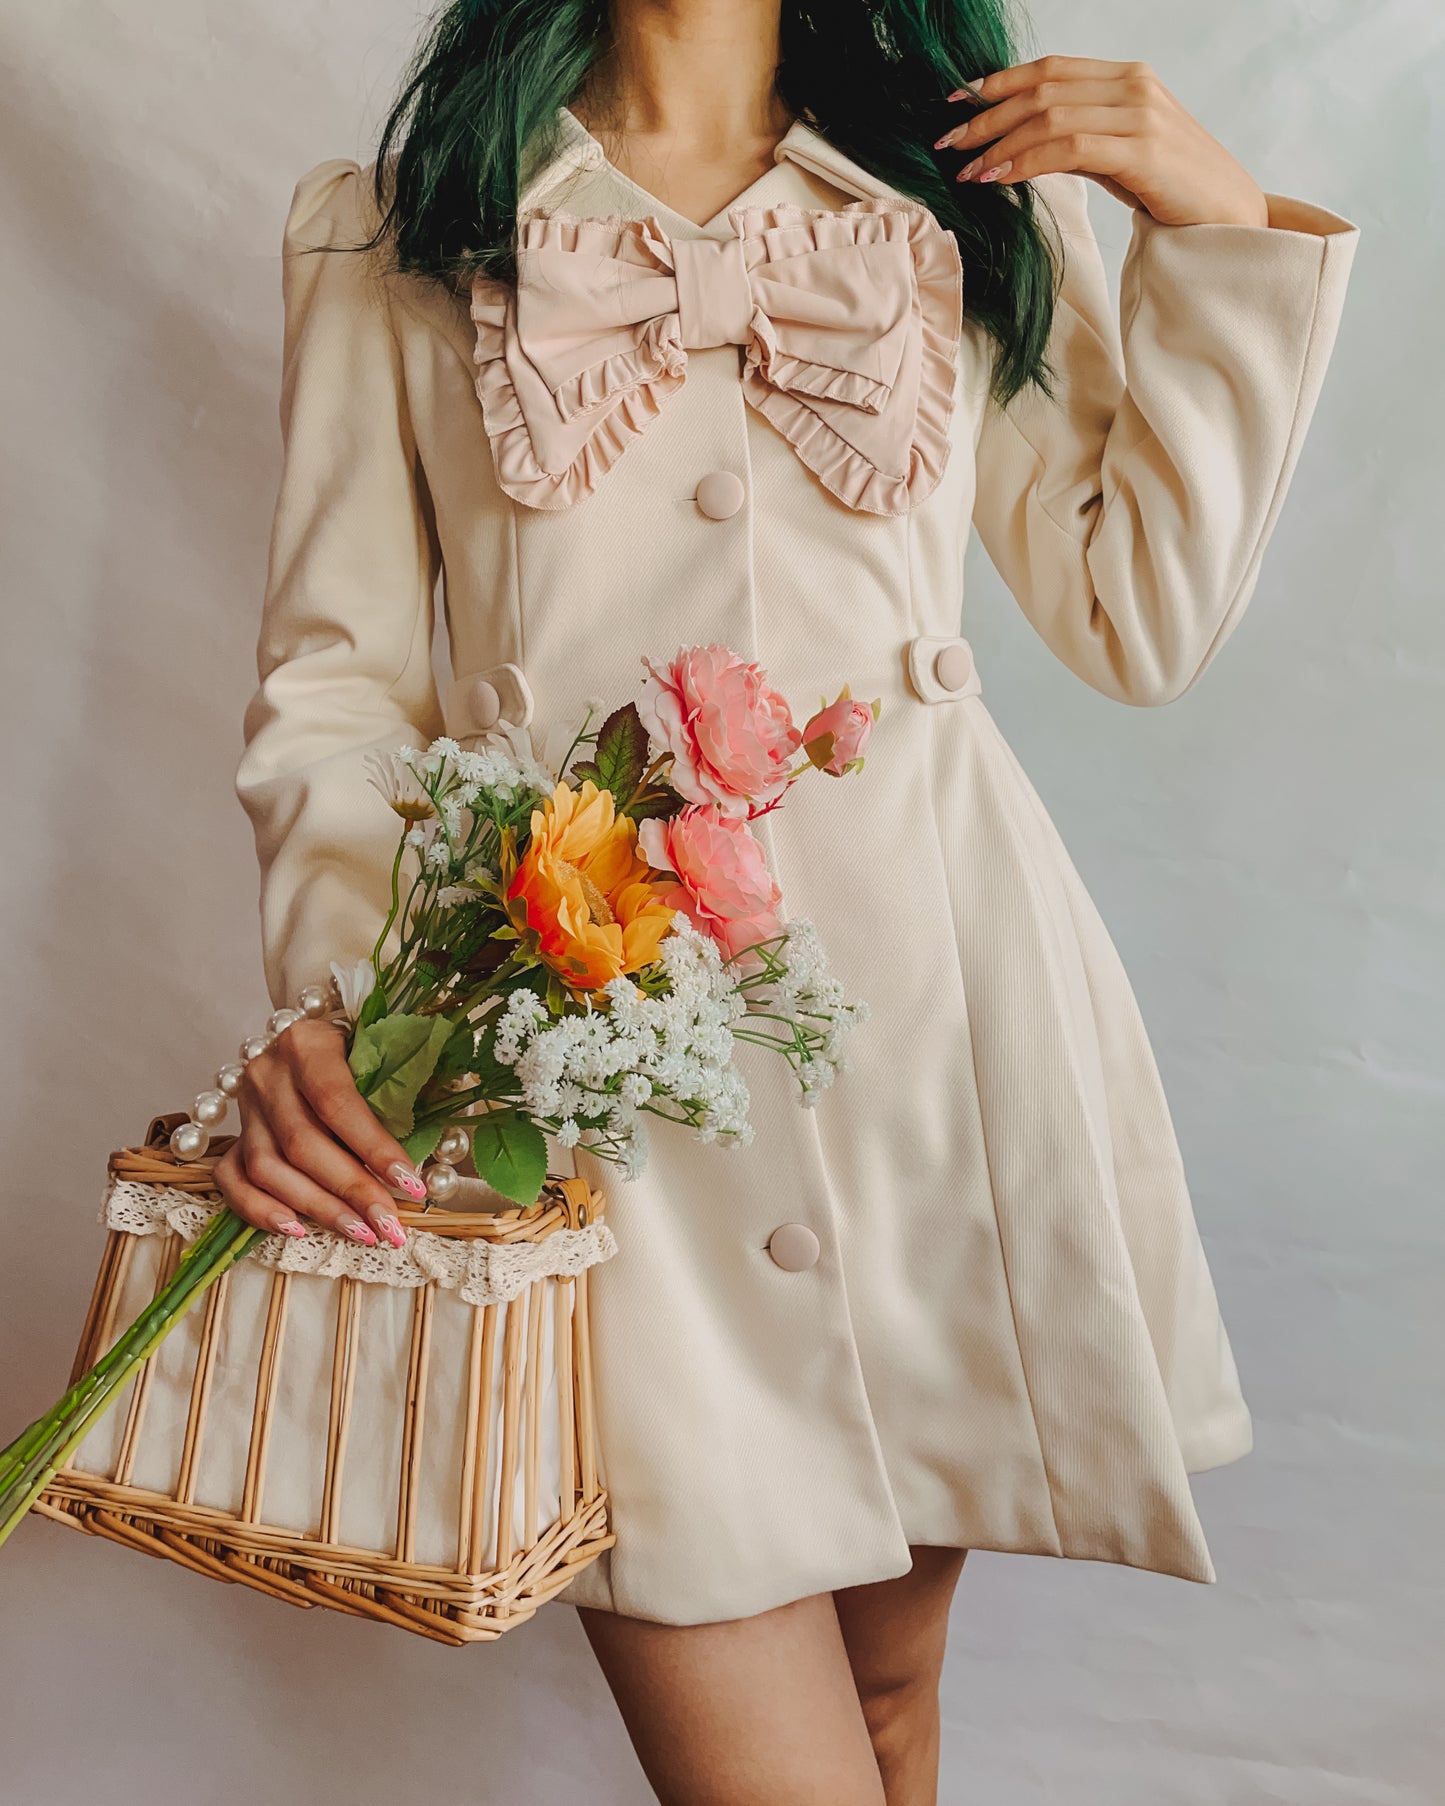 Sweet Bow Dress Coat (2 Colors)